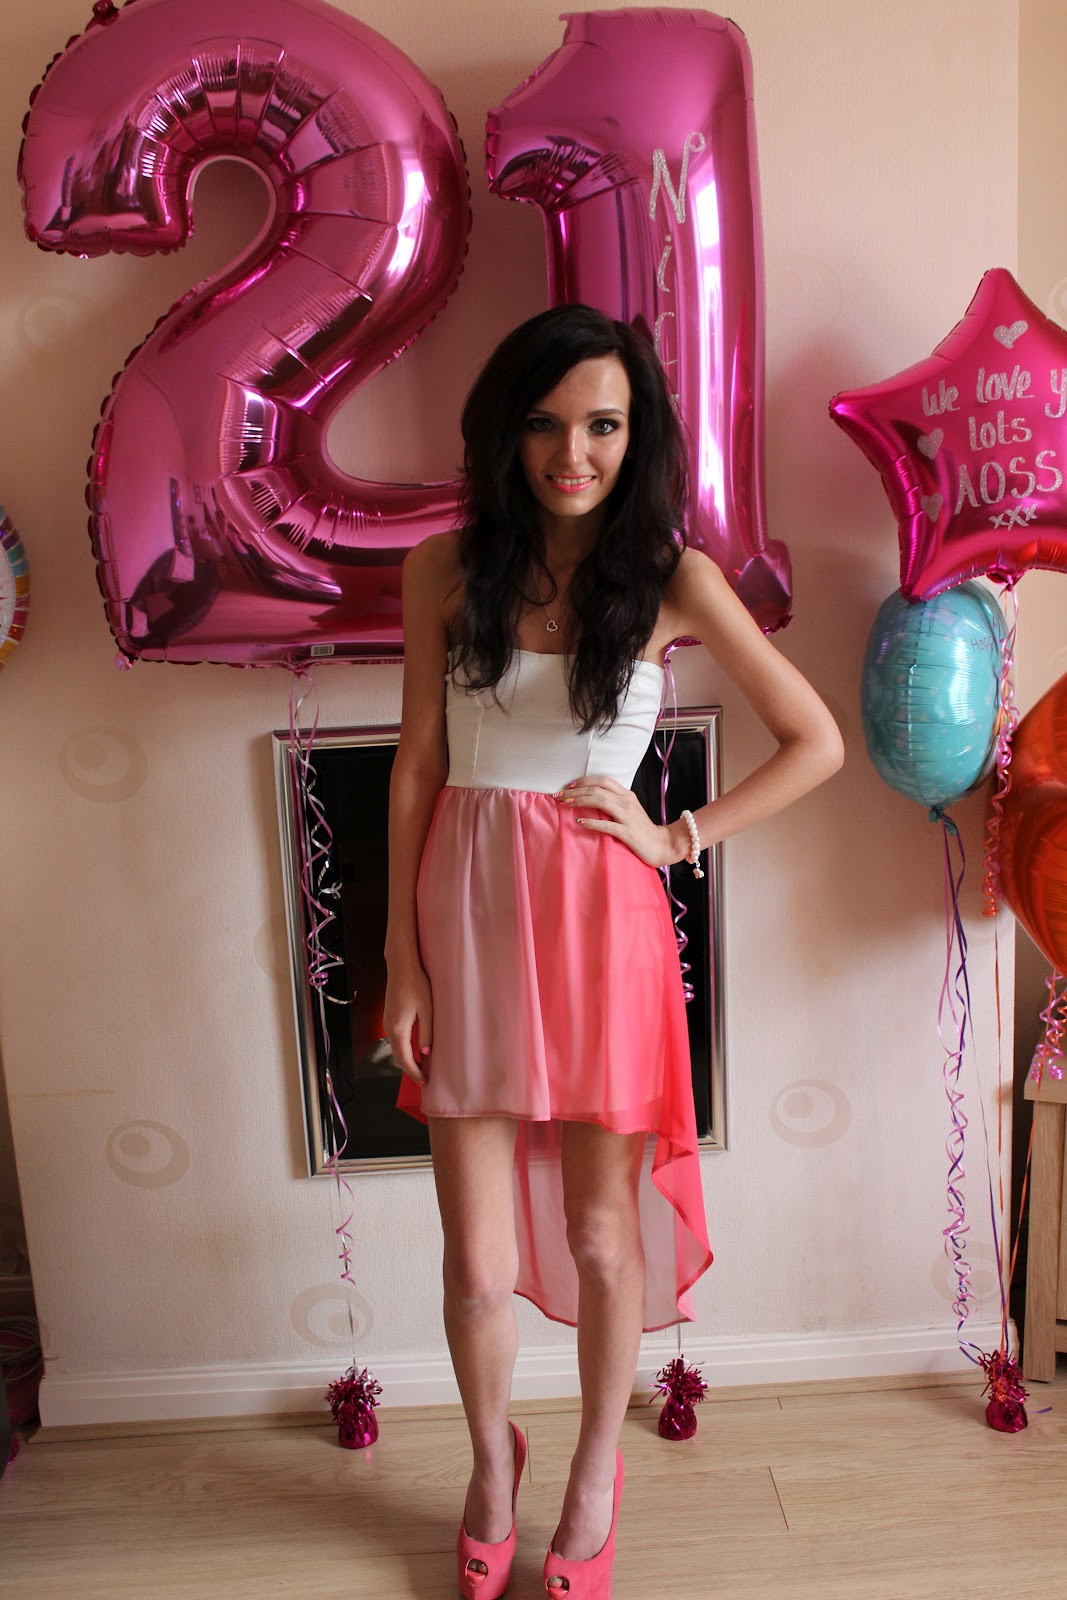 Birthday Party Dress Ideas
 Coleyyyful A Beauty & Fashion Blog My 21st Birthday